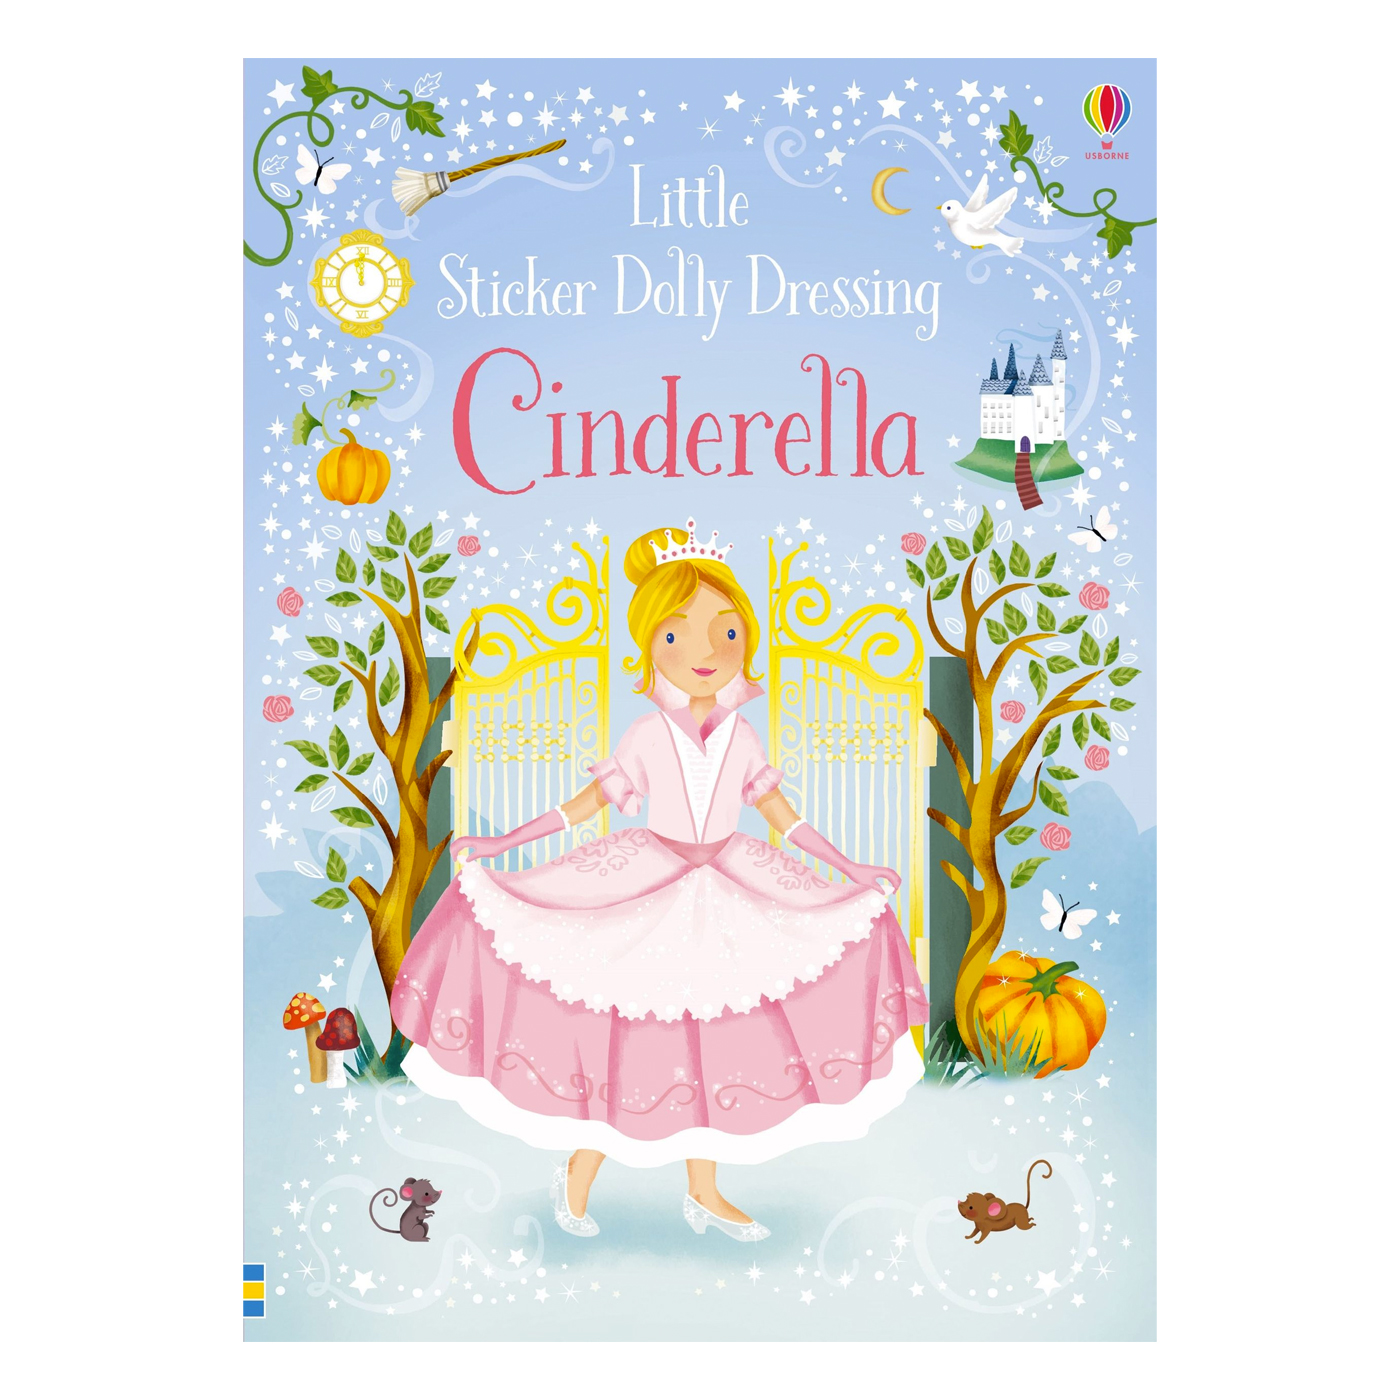  Little Sticker Dolly Dressing Cinderella